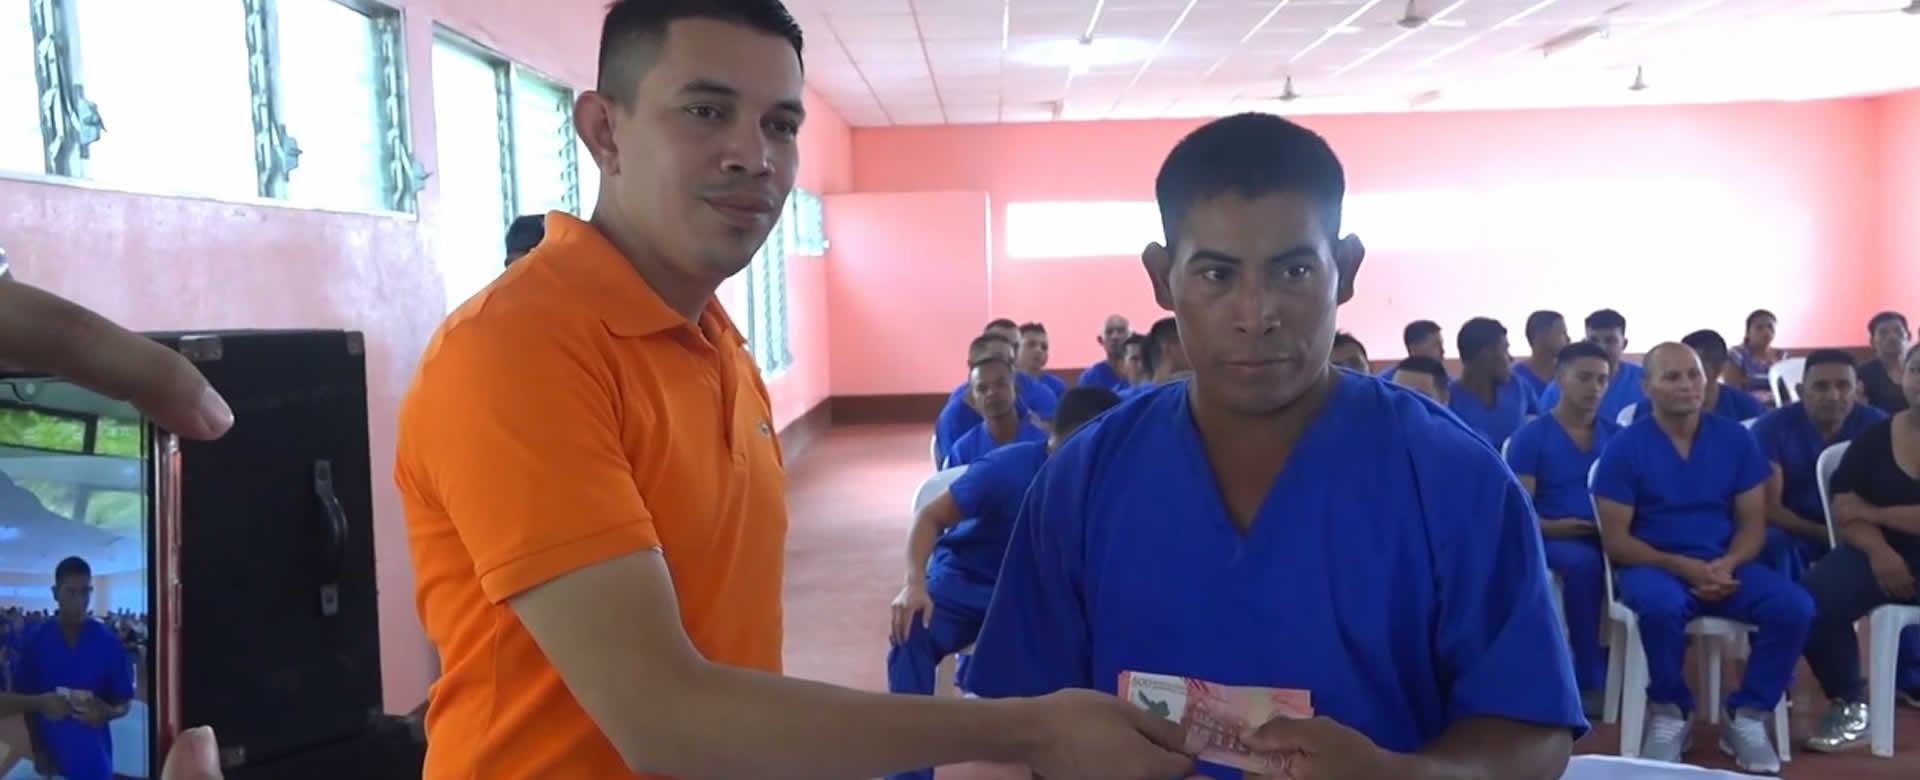 Matagalpa: Privados de libertad reciben su bono de bachiller